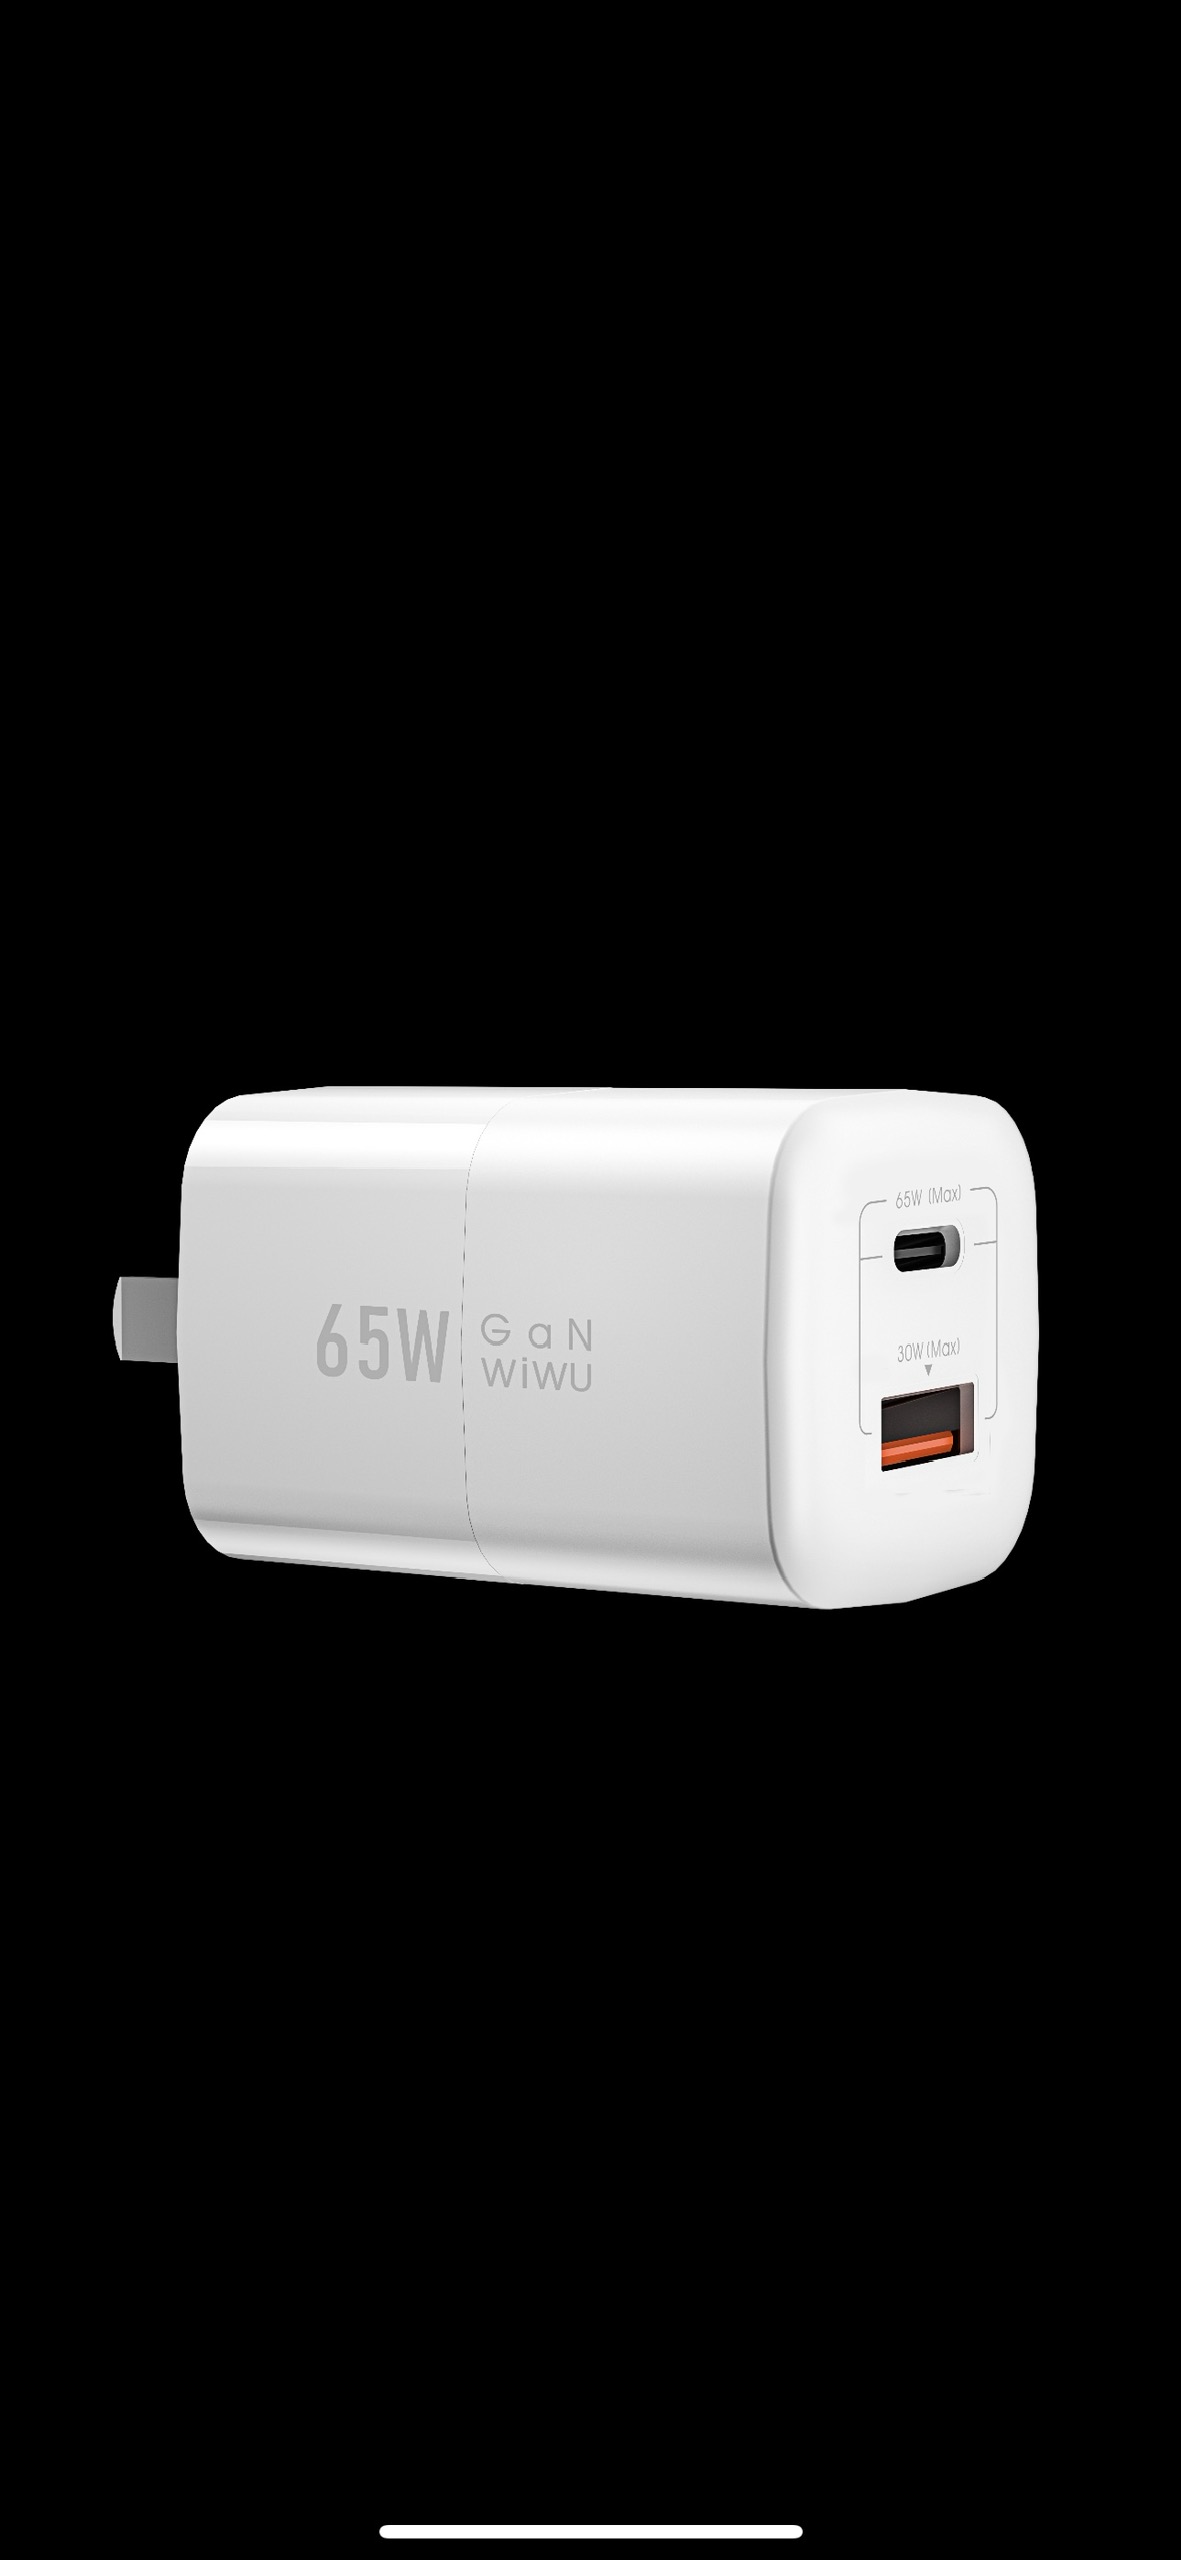 Củ sạc nhanh Wiwu Nano Gan PD + QC Fast Charger Wi-U012 cho điện thoại, máy tính bảng sạc nhanh 65W - Hàng chính hãng